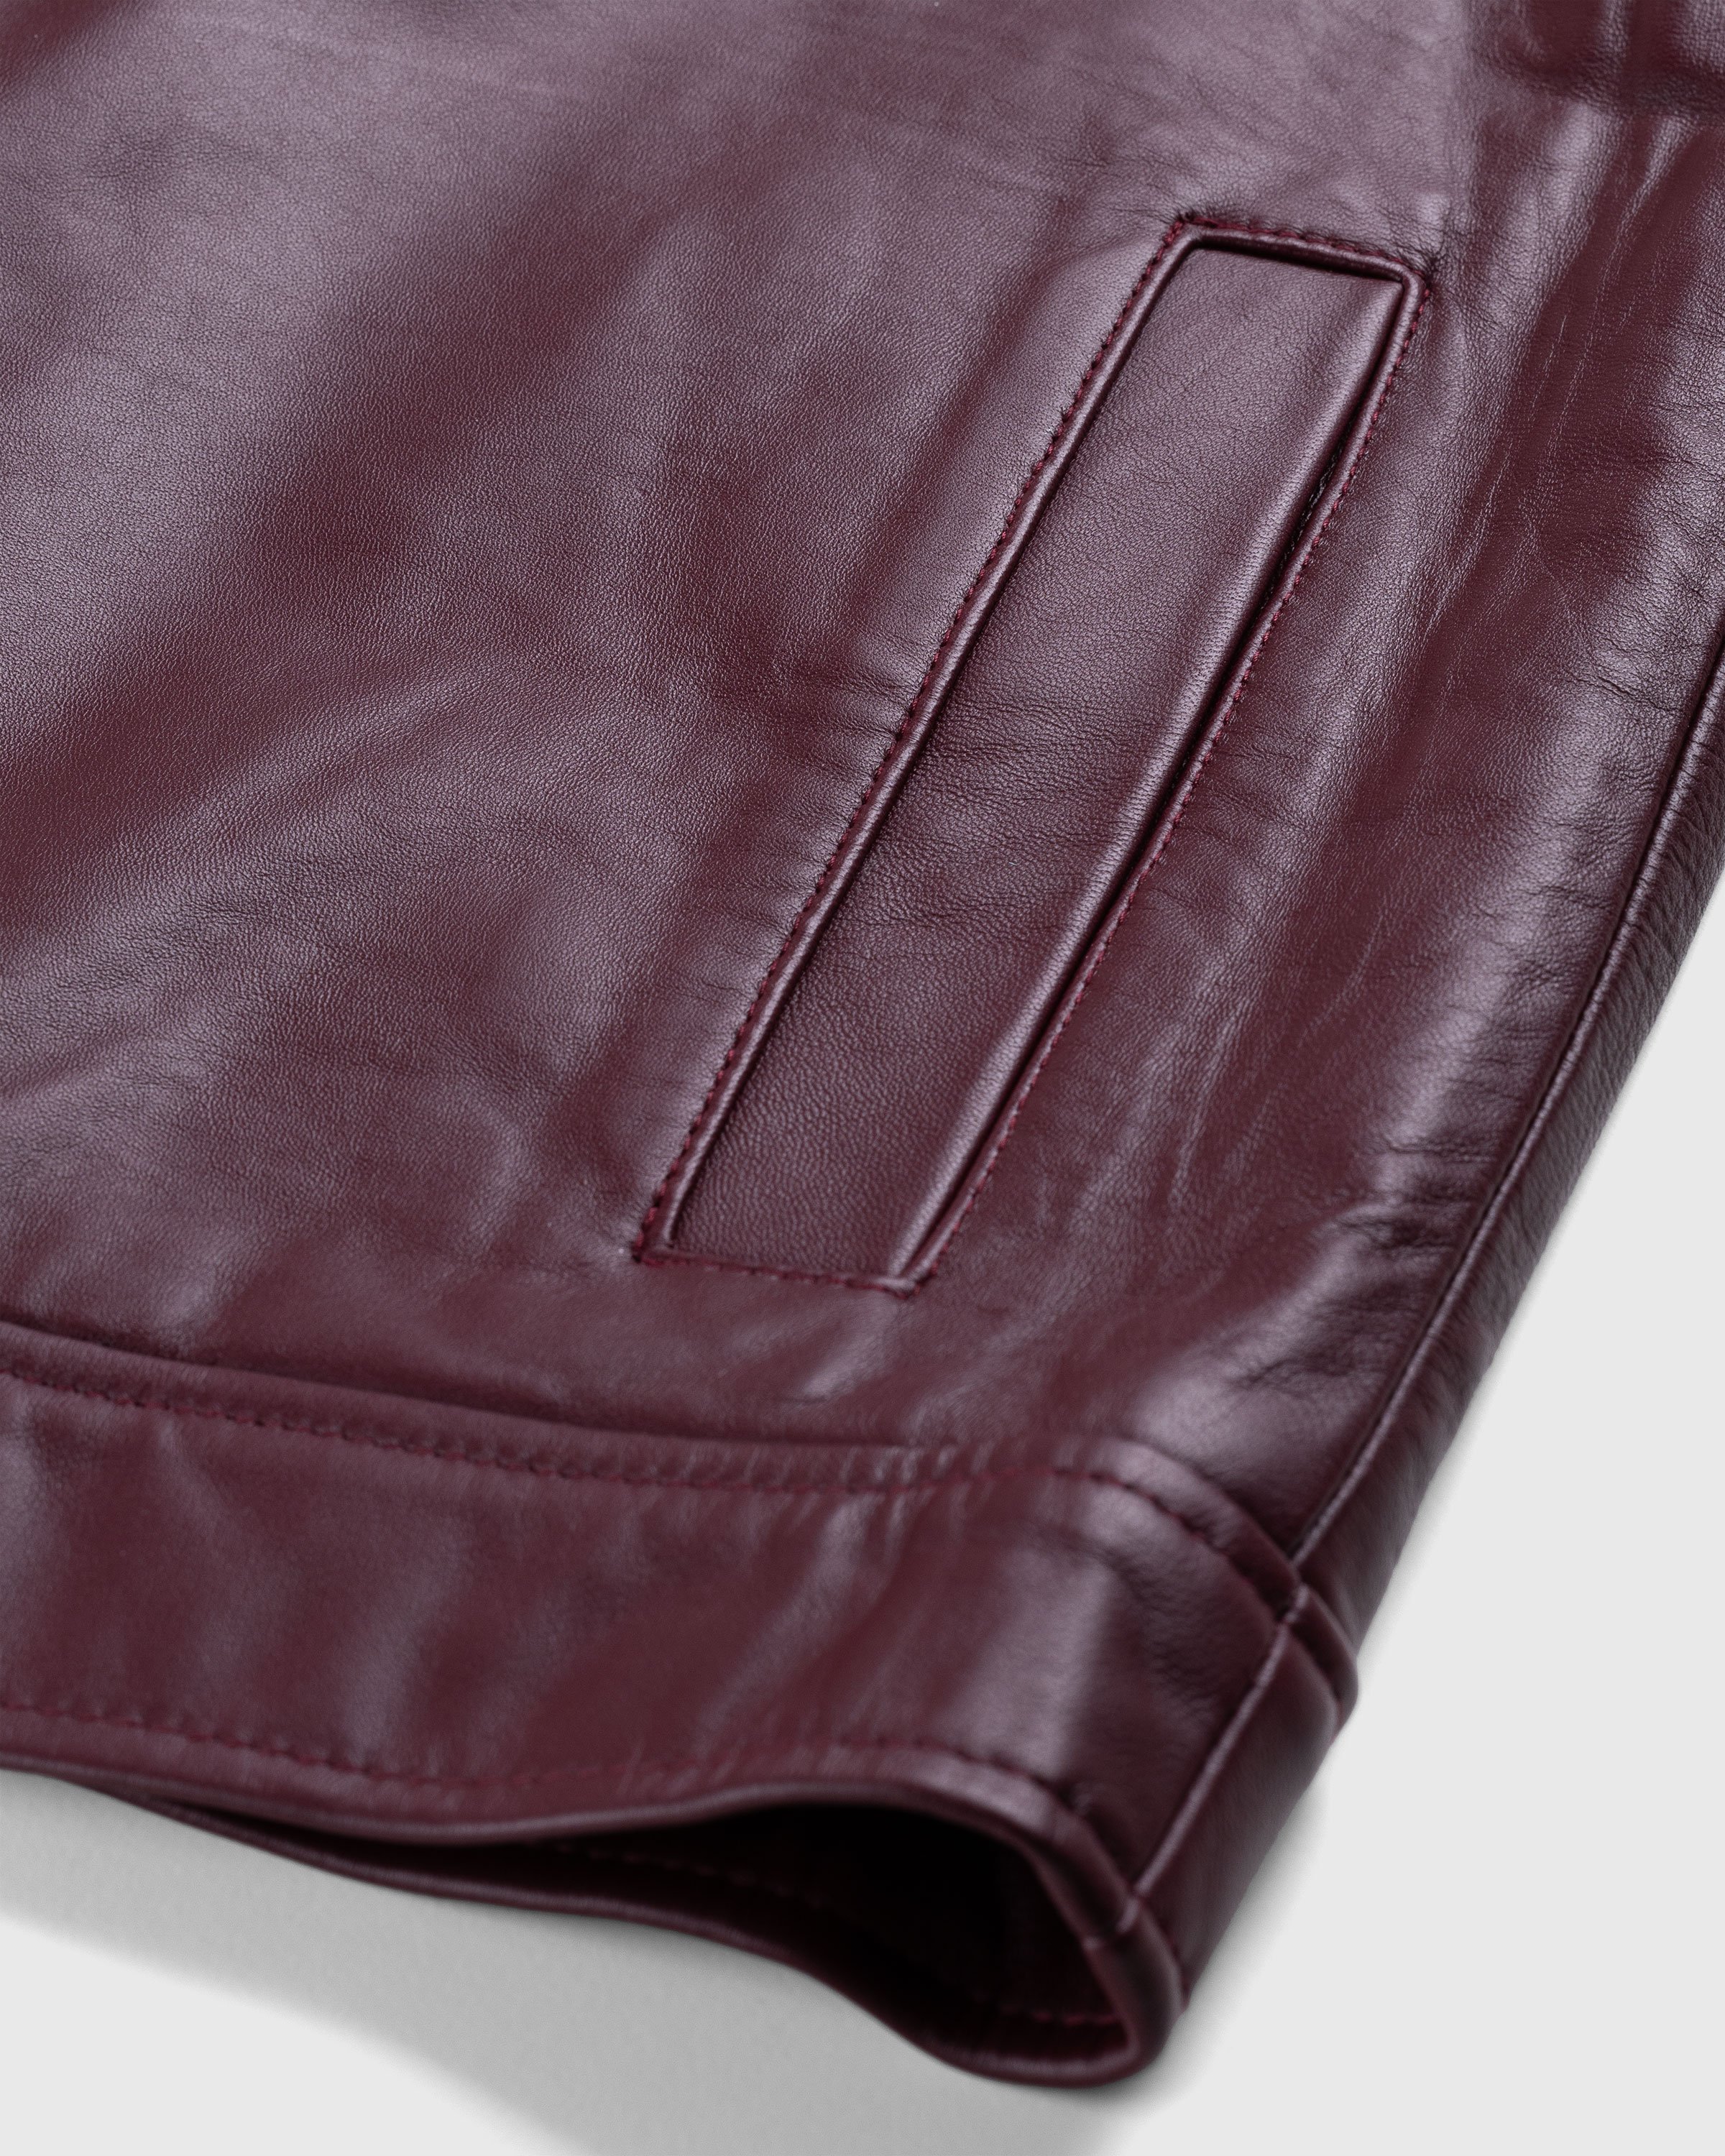 Highsnobiety HS05 - Leather Jacket Burgundy - Clothing - Red - Image 7